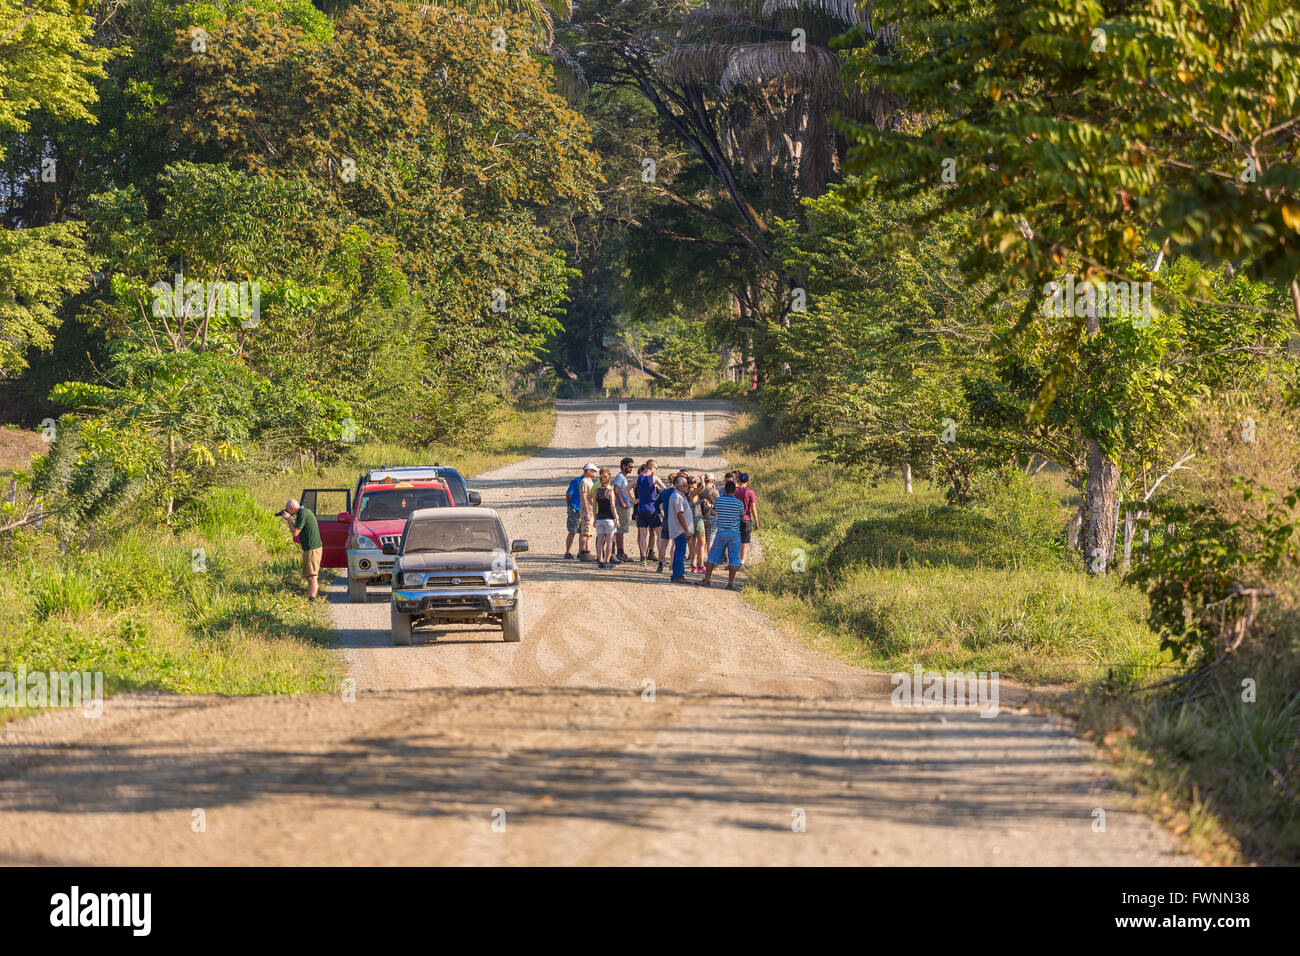 OSA Halbinsel, COSTA RICA - Öko-Touristen Autos auf Feldweg, Tiere zu stoppen. Stockfoto